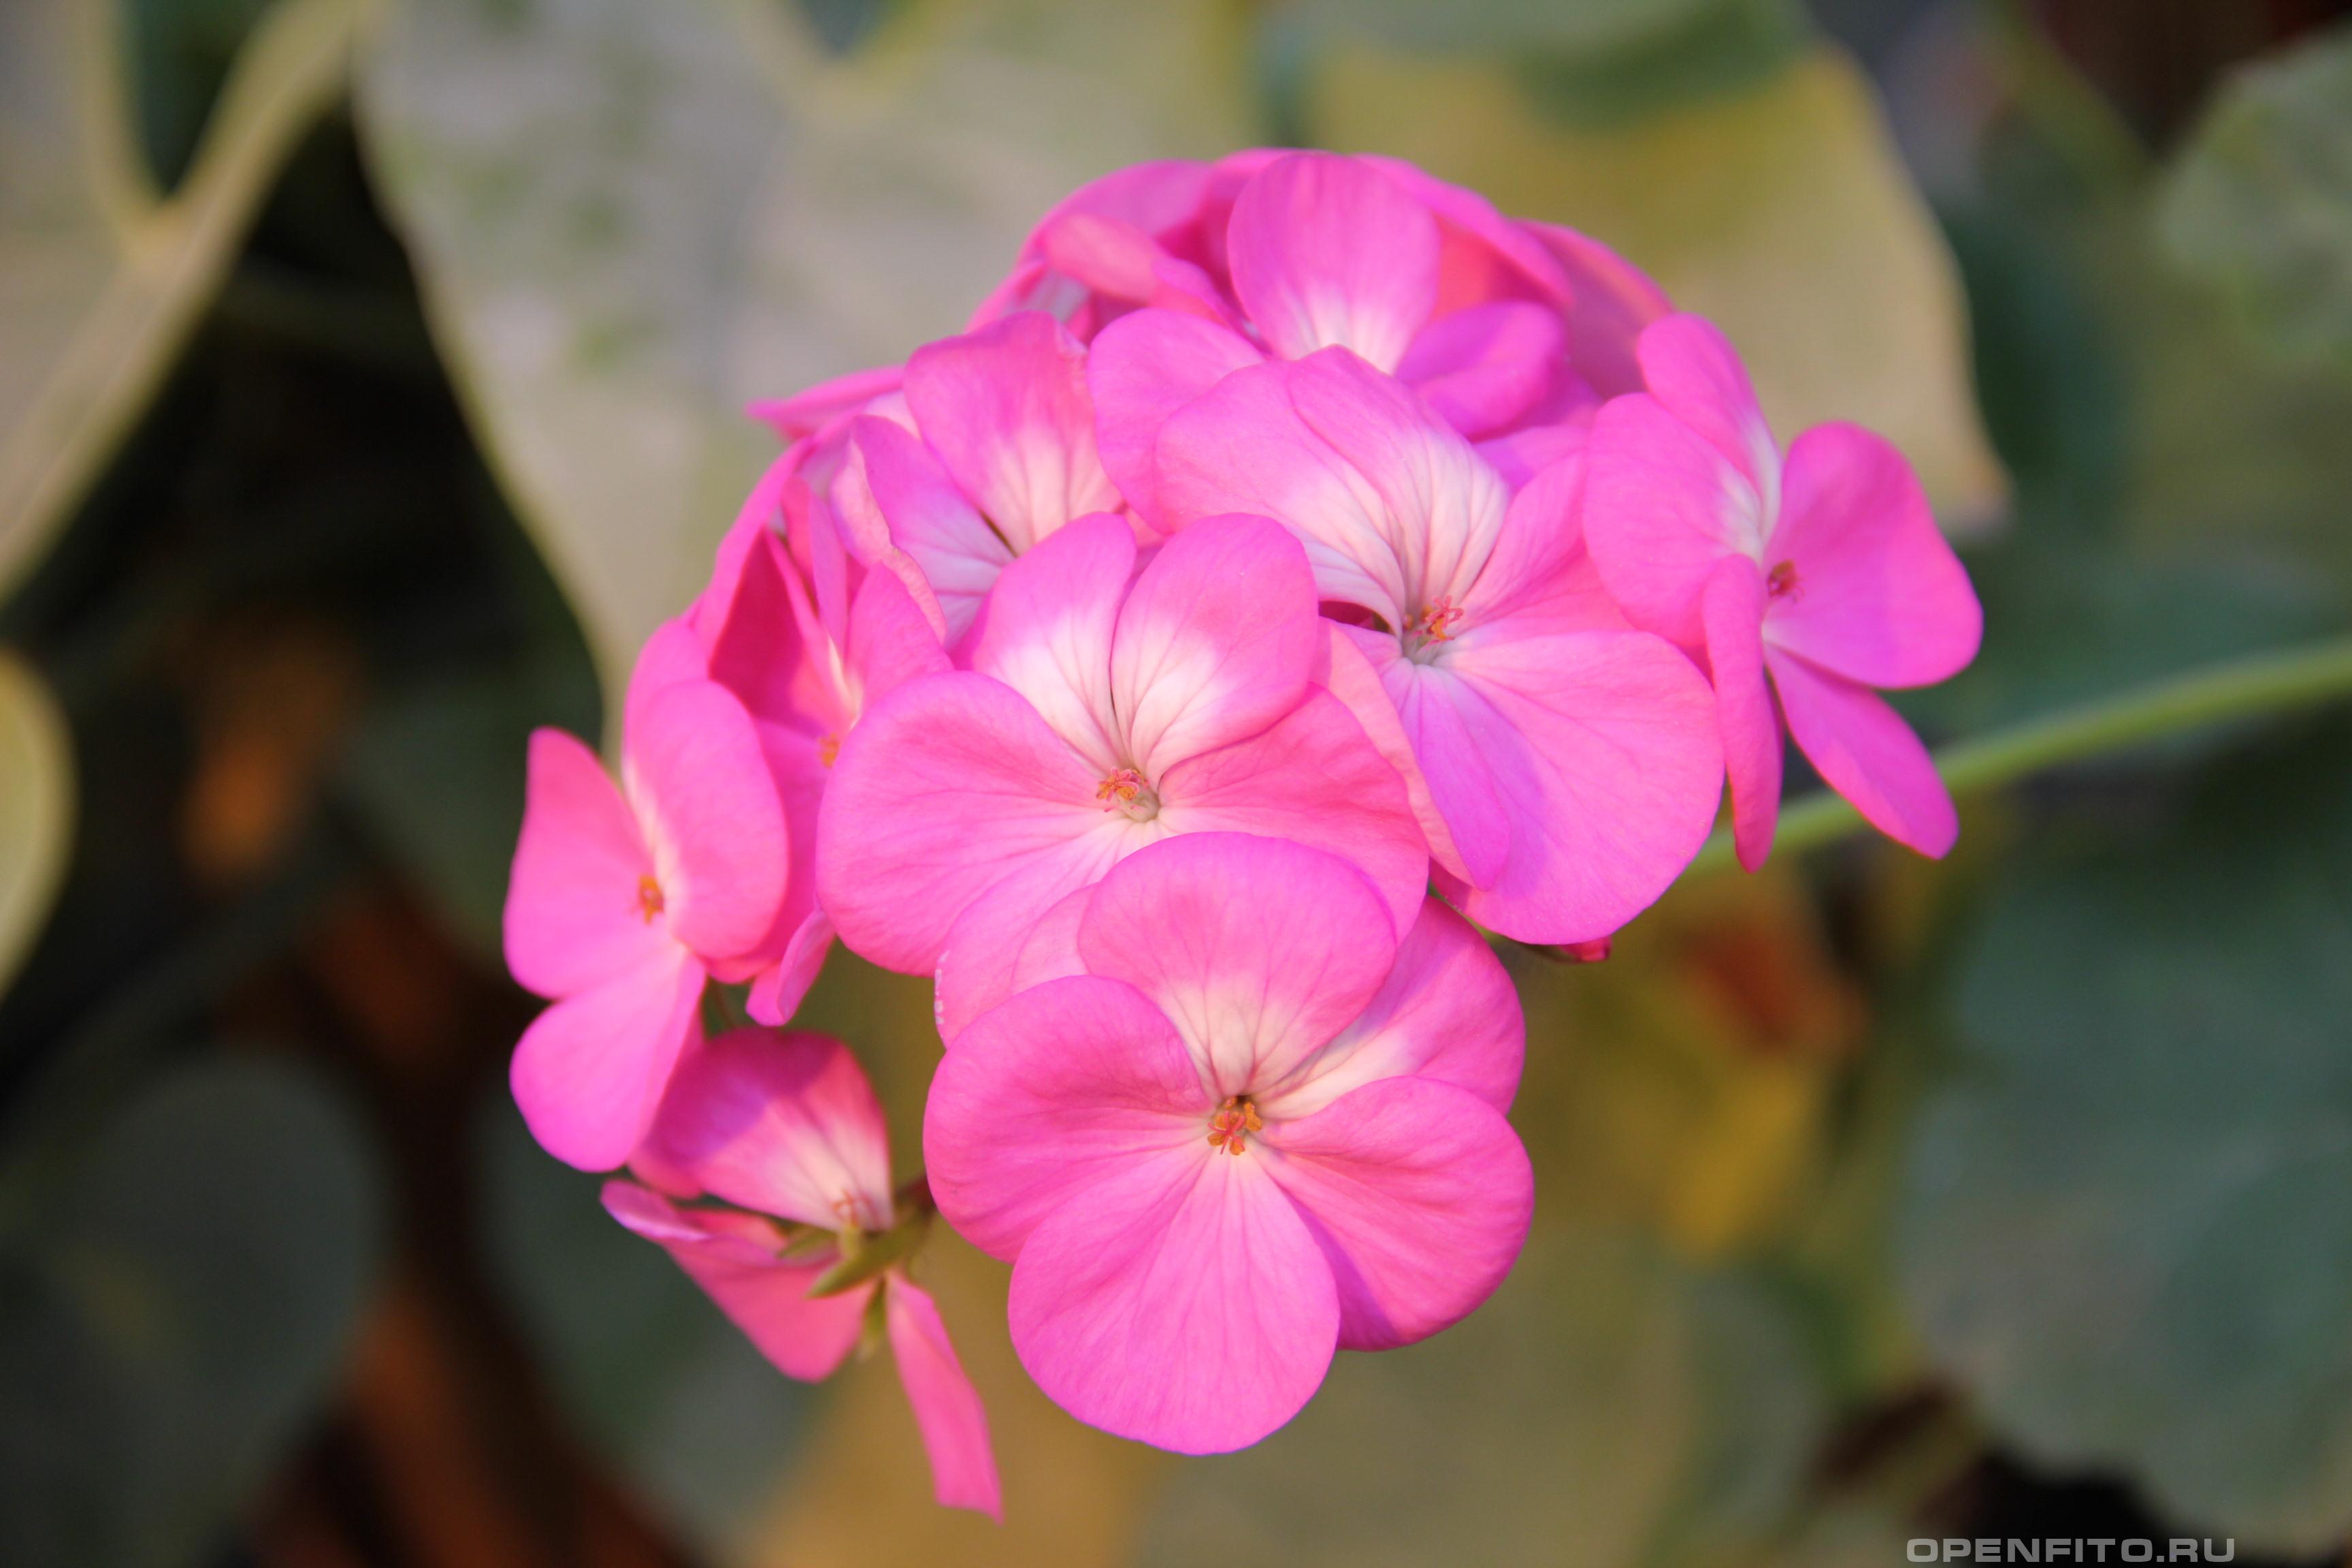 Пеларгония крупноцветковая - фотография цветка